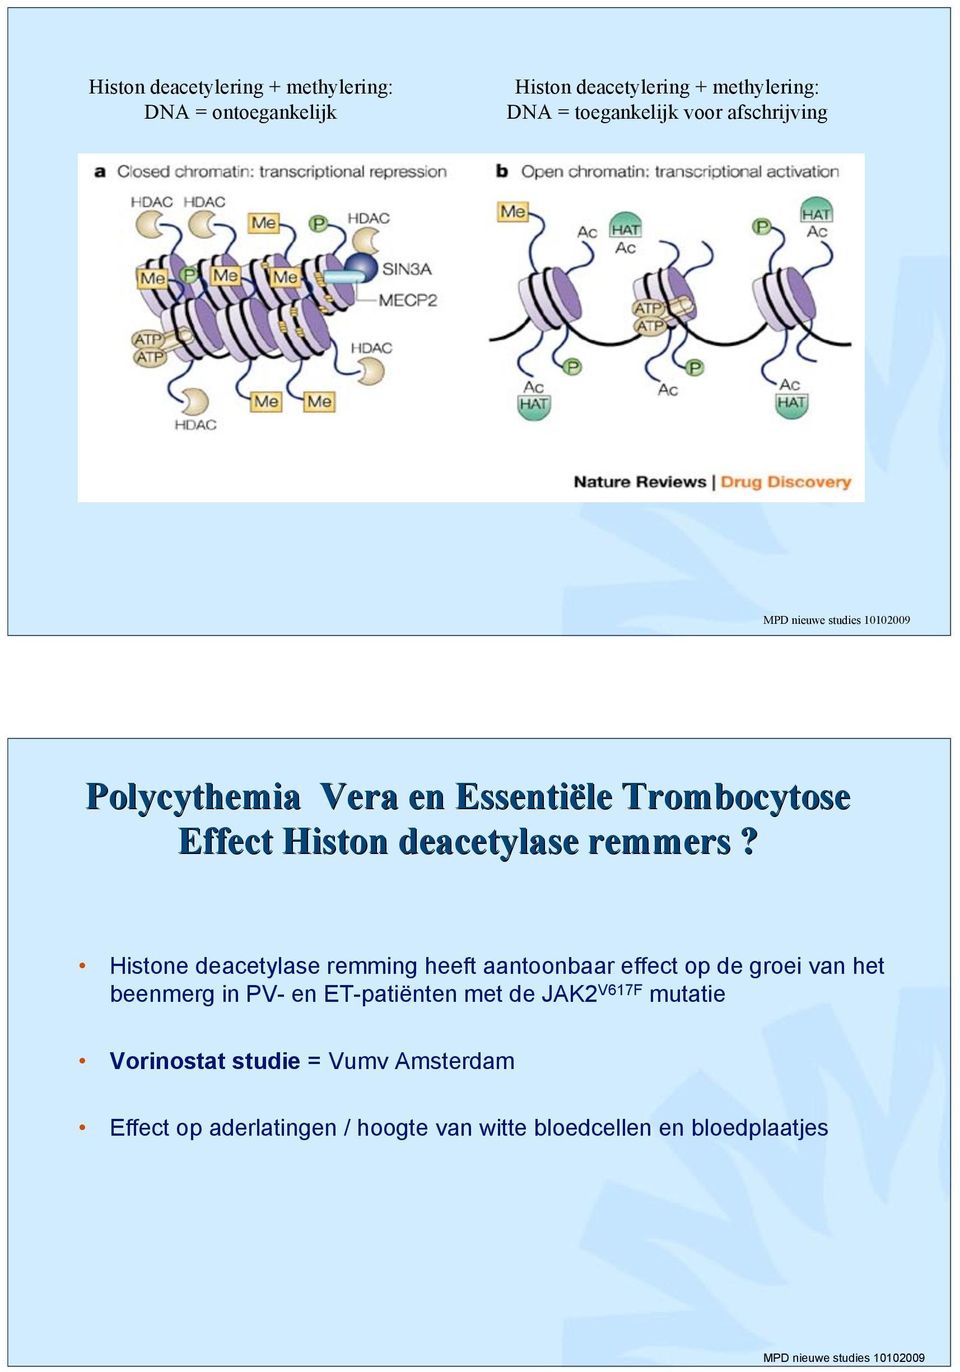 Histone deacetylase remming heeft aantoonbaar effect op de groei van het beenmerg in PV- en ET-patiënten met de